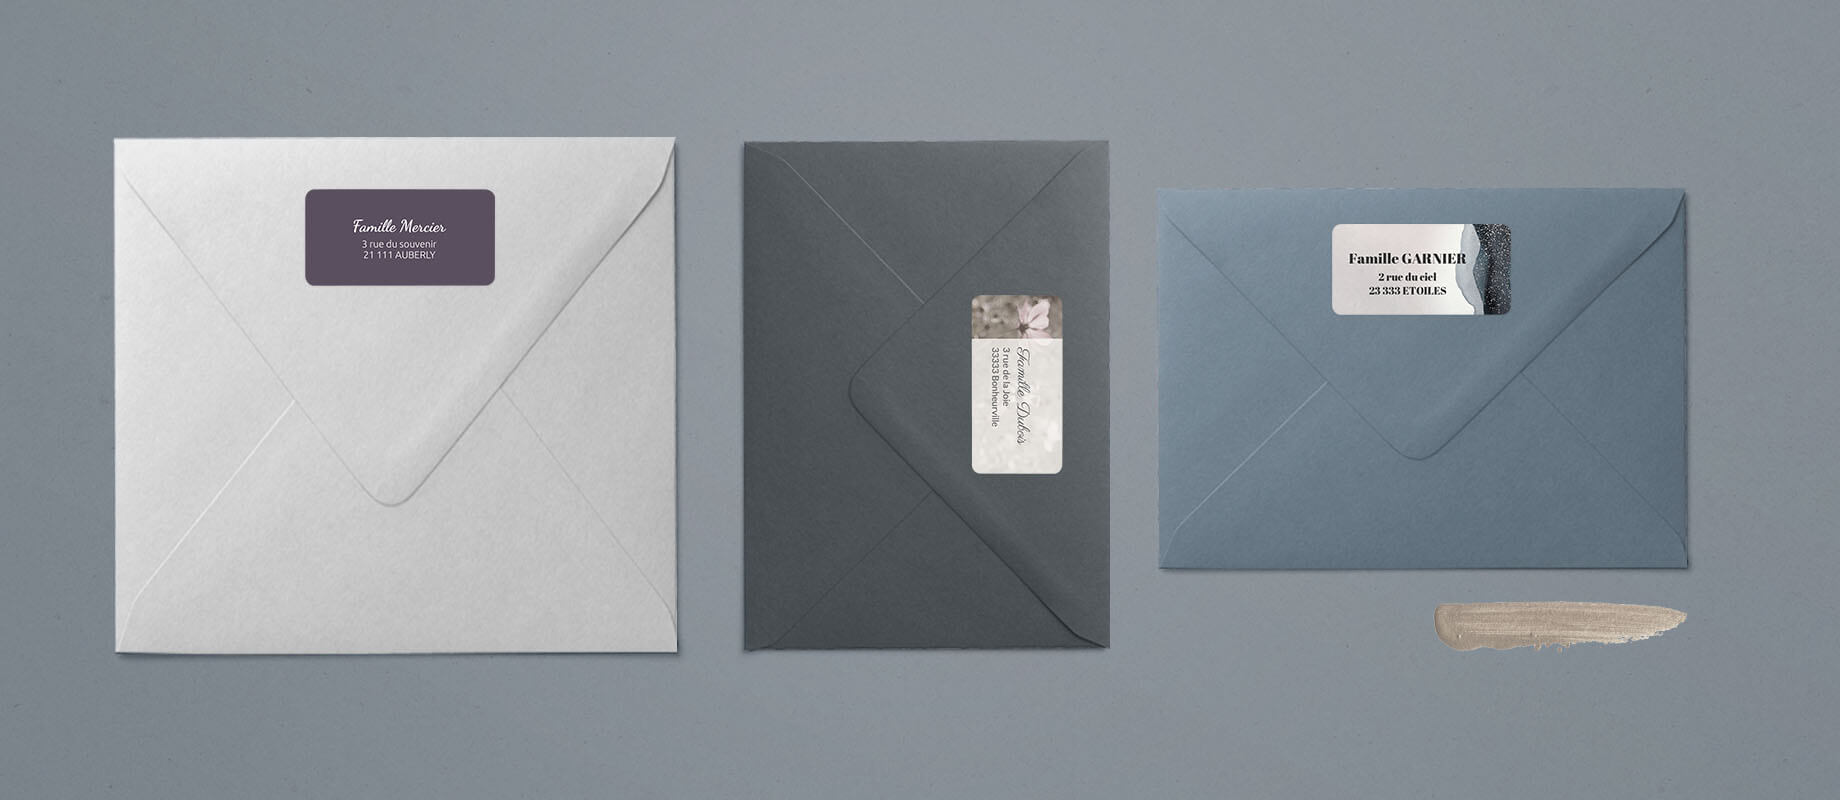 Une enveloppe grise, une enveloppe bleue, une enveloppe blanche accompagnées de leur étiquette d'adresse collée à l'arrière des enveloppe.